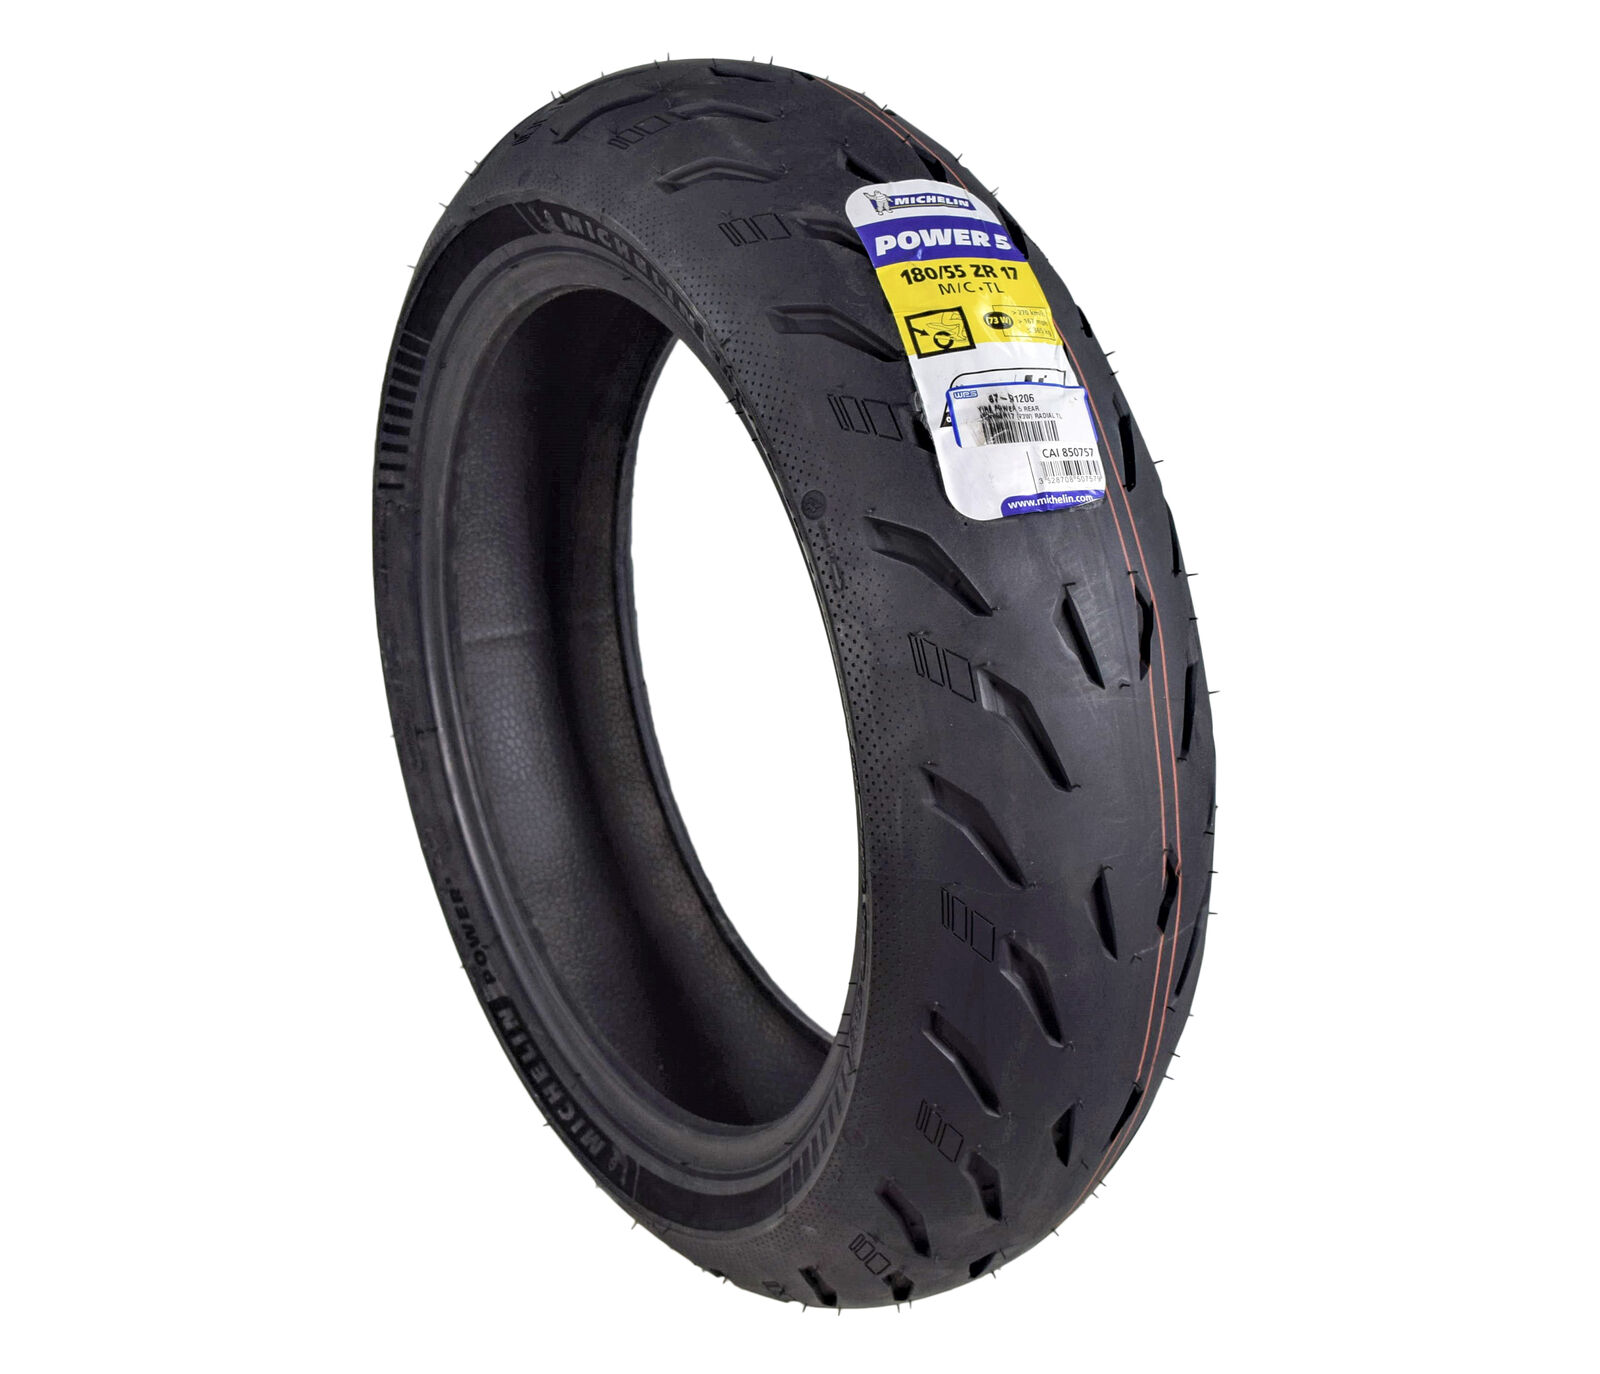 Michelin Pilot Power 5 180/55ZR17 (73W) Rear Radial Motorcycle Tire 180/55-17